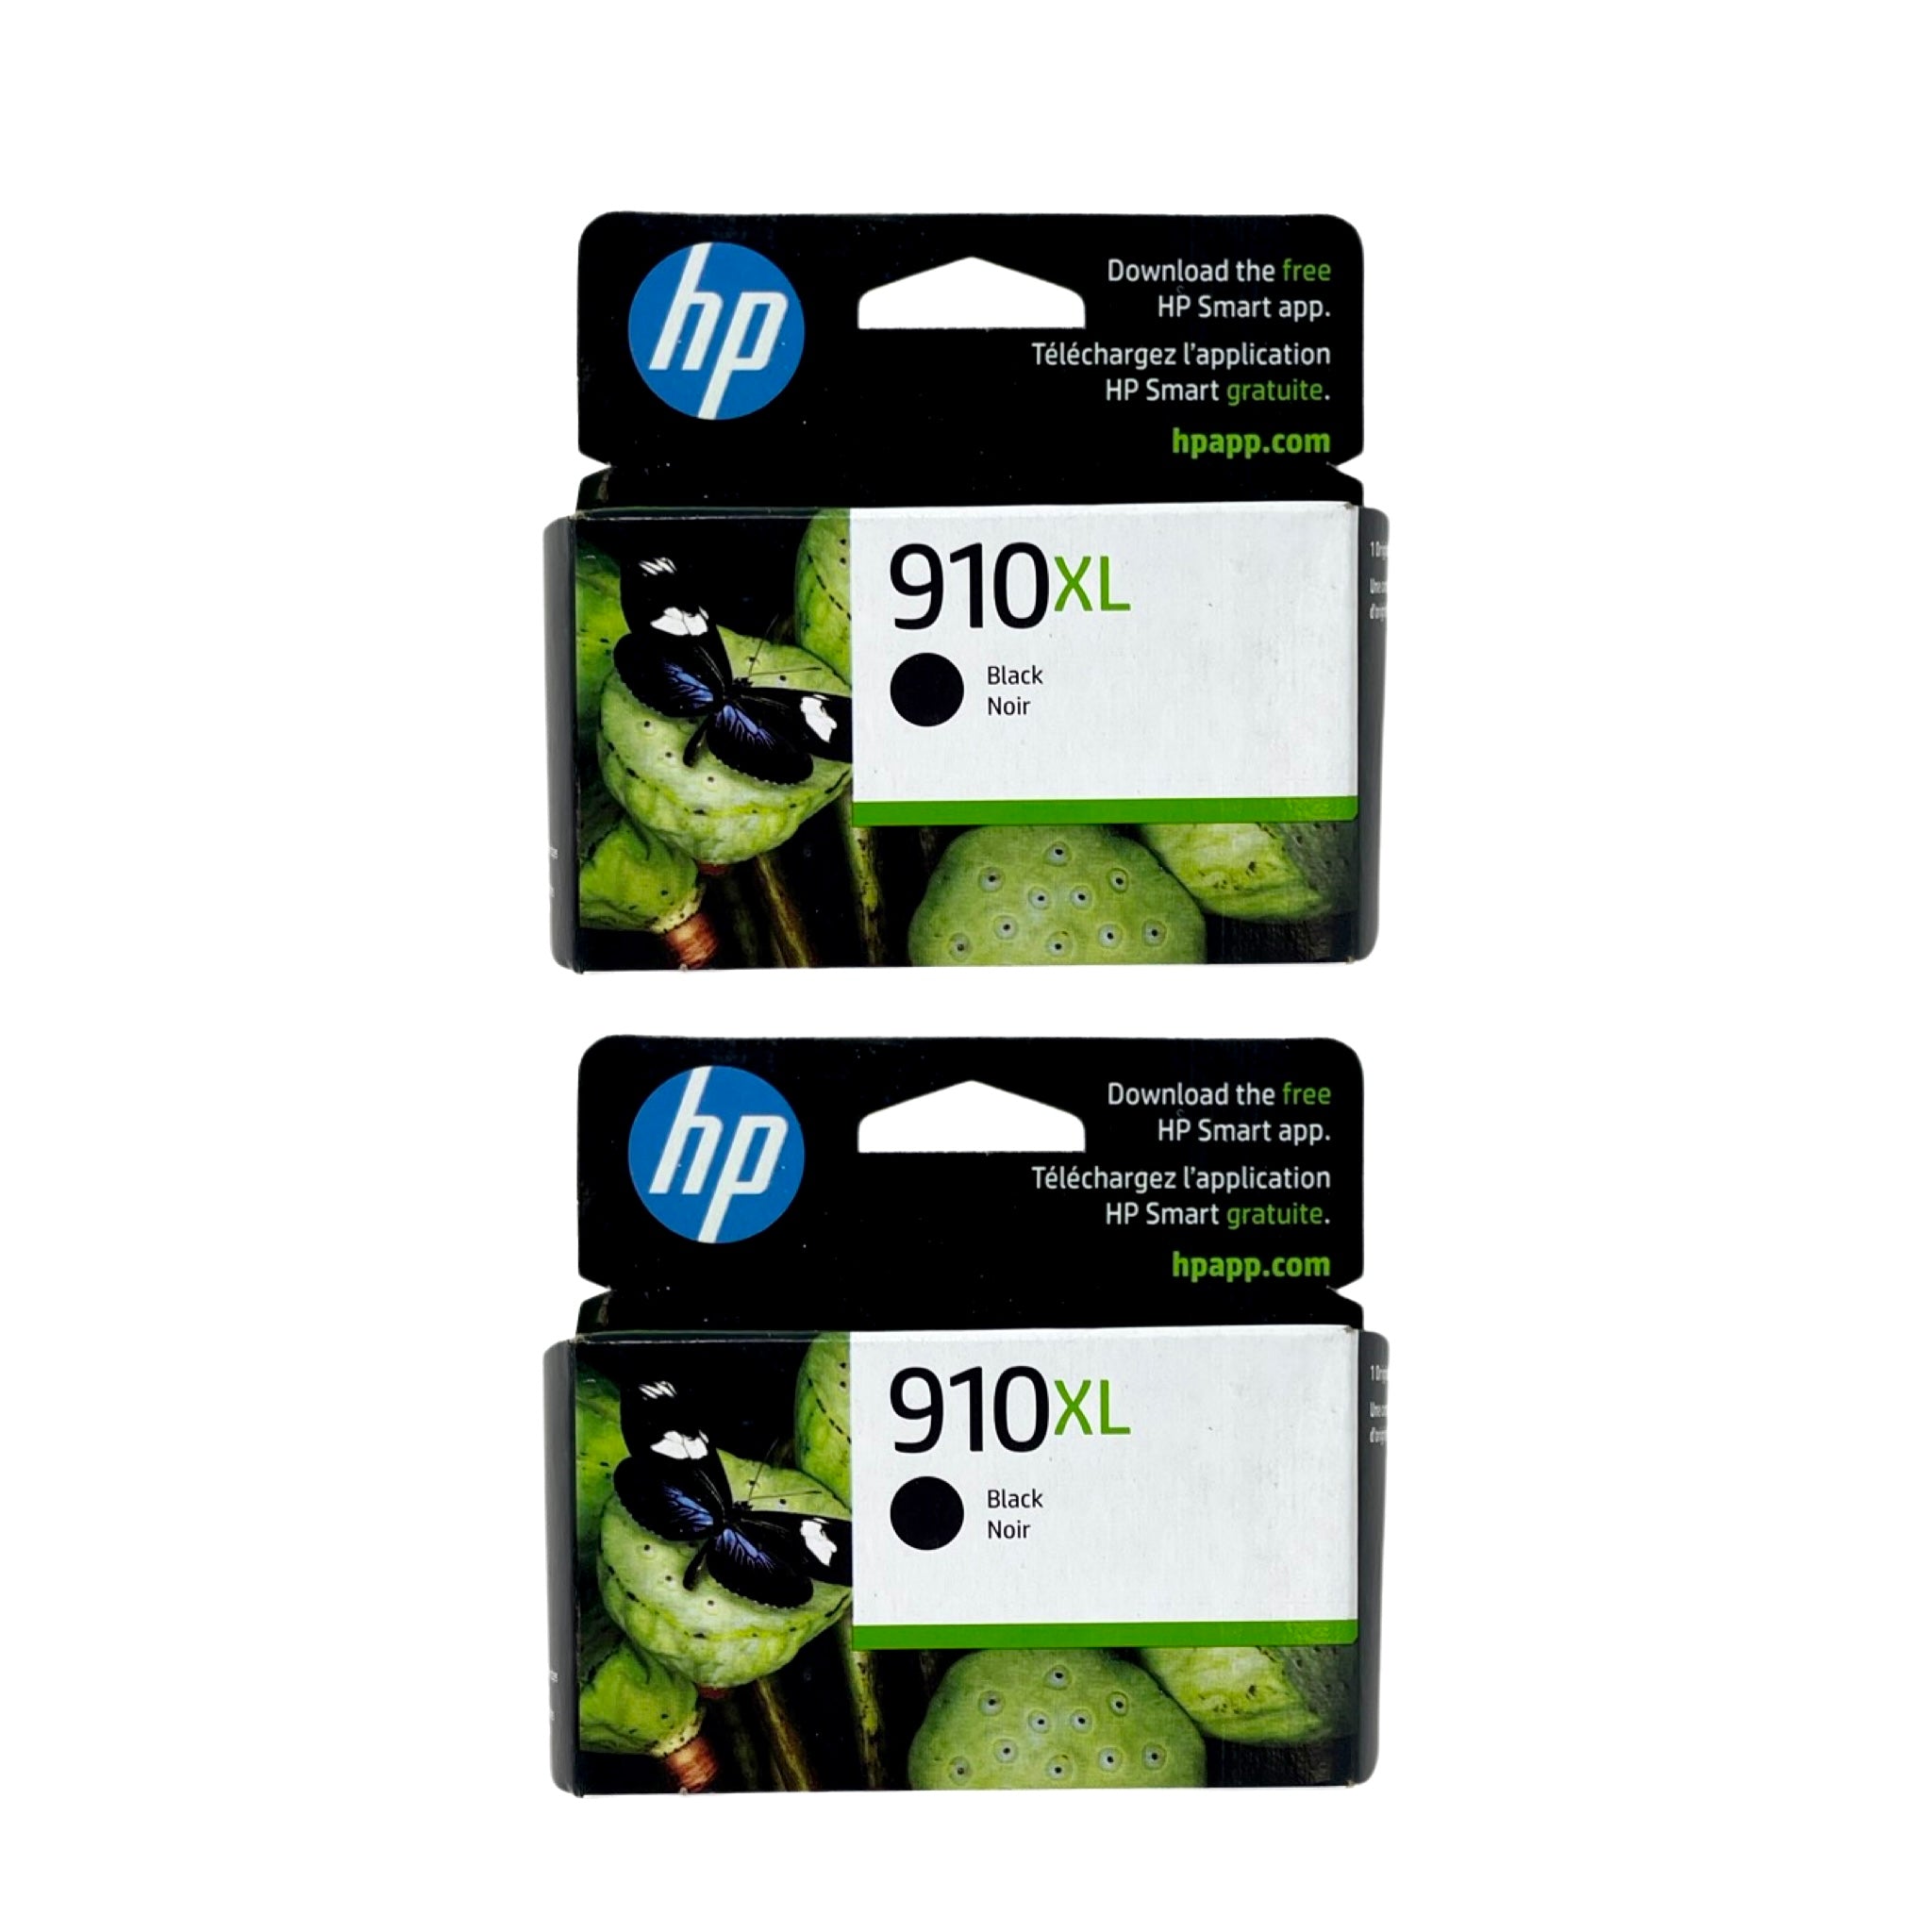 HP 910XL High Yield Ink 2 Pack- Black - Original HP Ink Cartridges